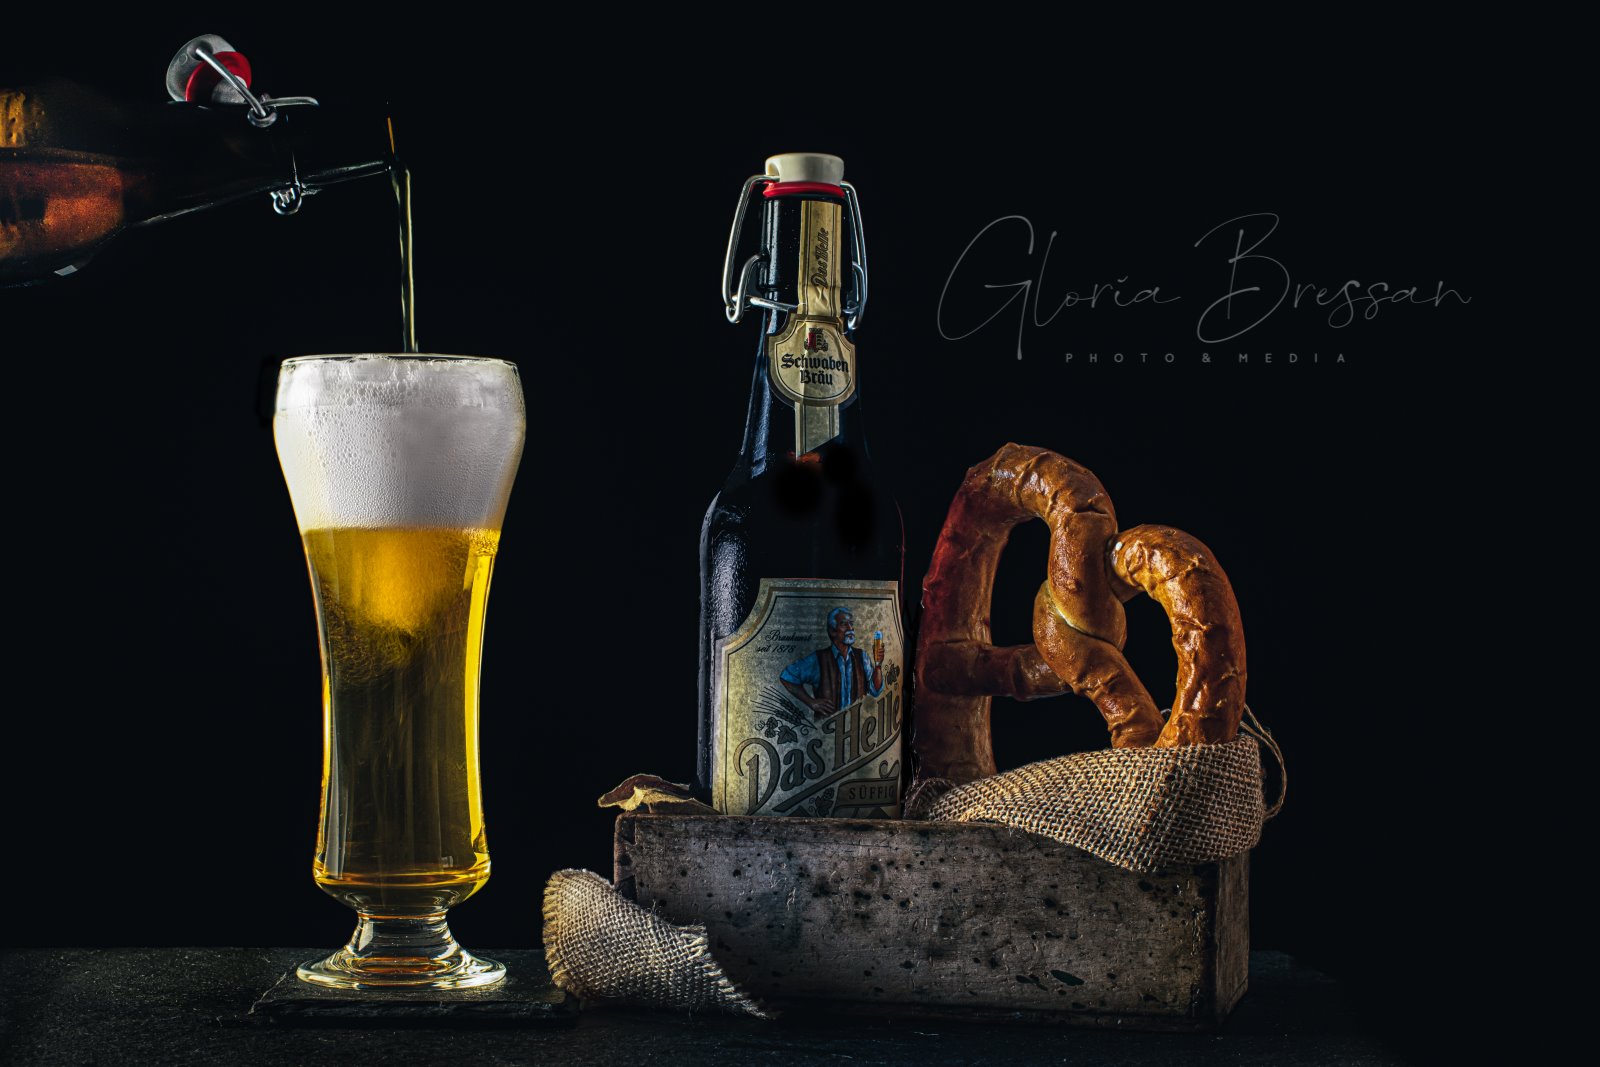 weissbier-birra-beer-food photography switzerland-foodphotographyzurich-still life photography